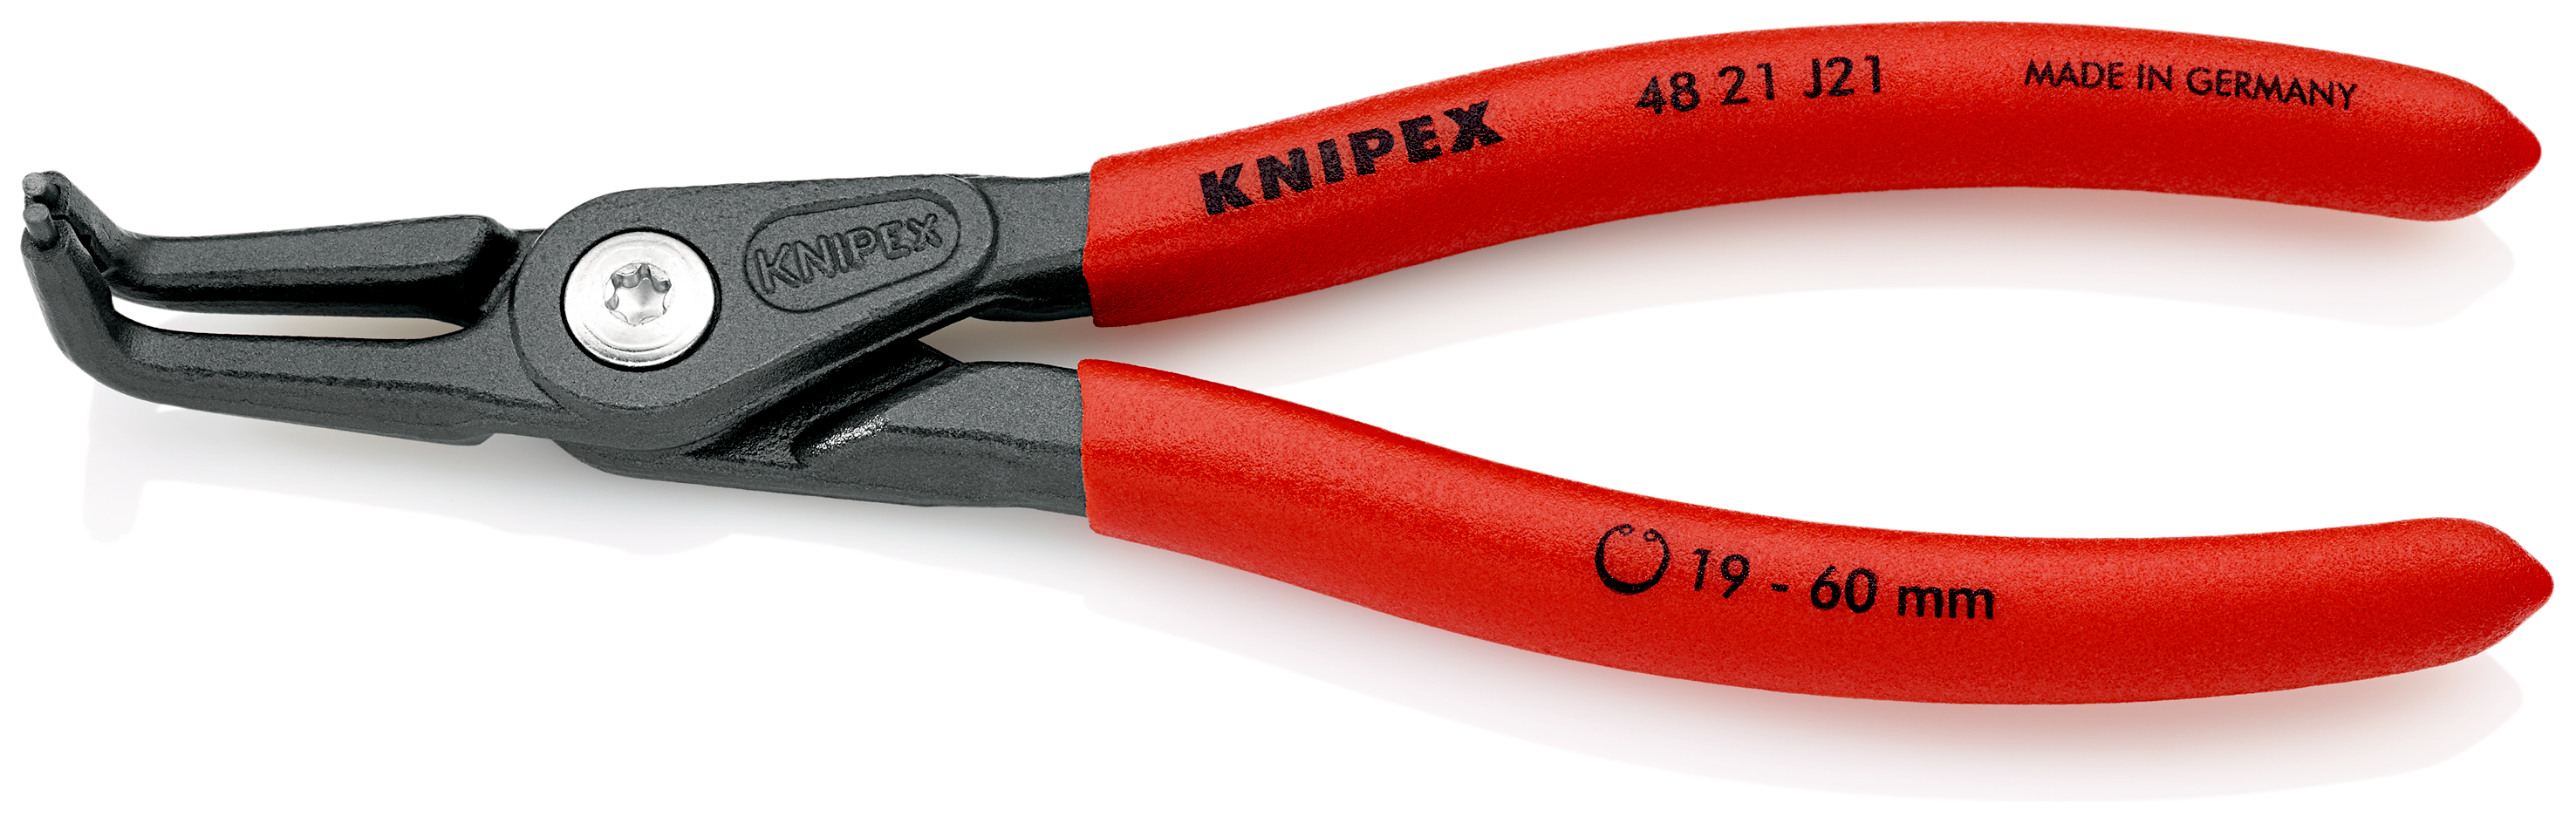 Knipex 4821J21 Cleste pentru inele de siguranta de interior, lungime 165 mm